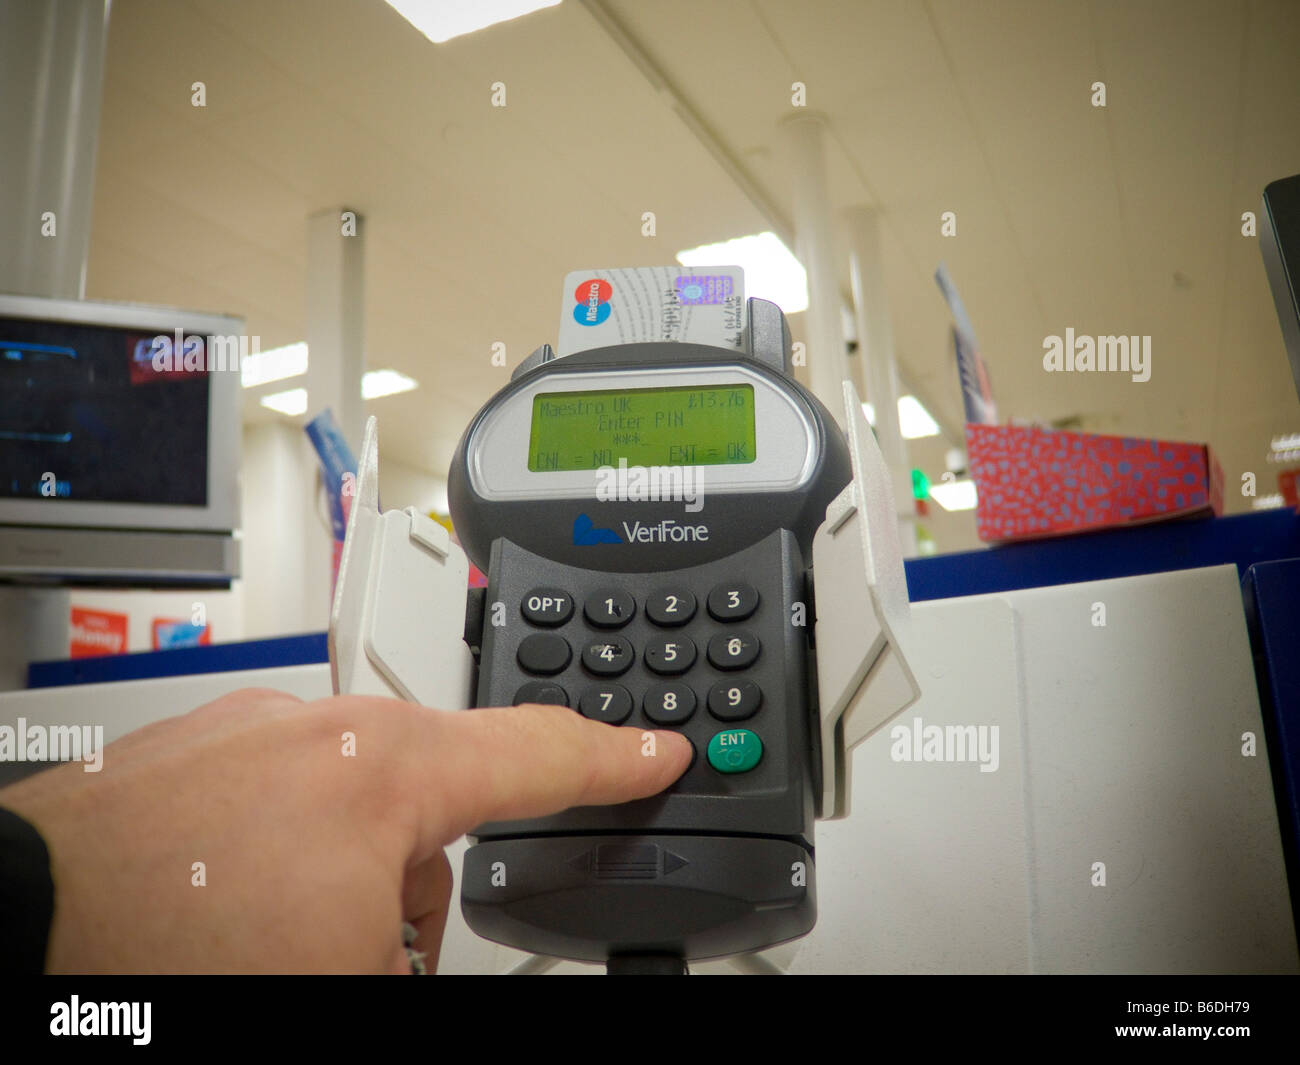 Ein Käufer an einem Self-service Check-Out mit EC-Karte bezahlen / chip und pin. Stockfoto